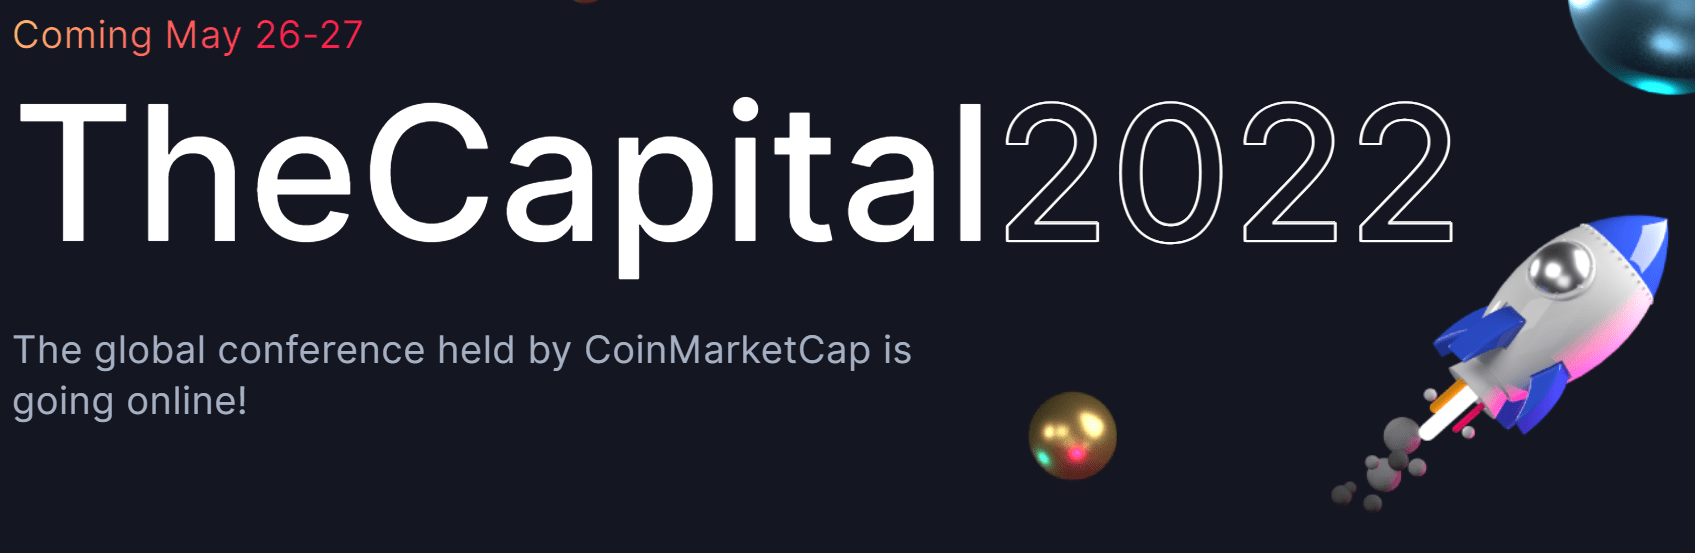 CoinMarketCap: เมืองหลวง